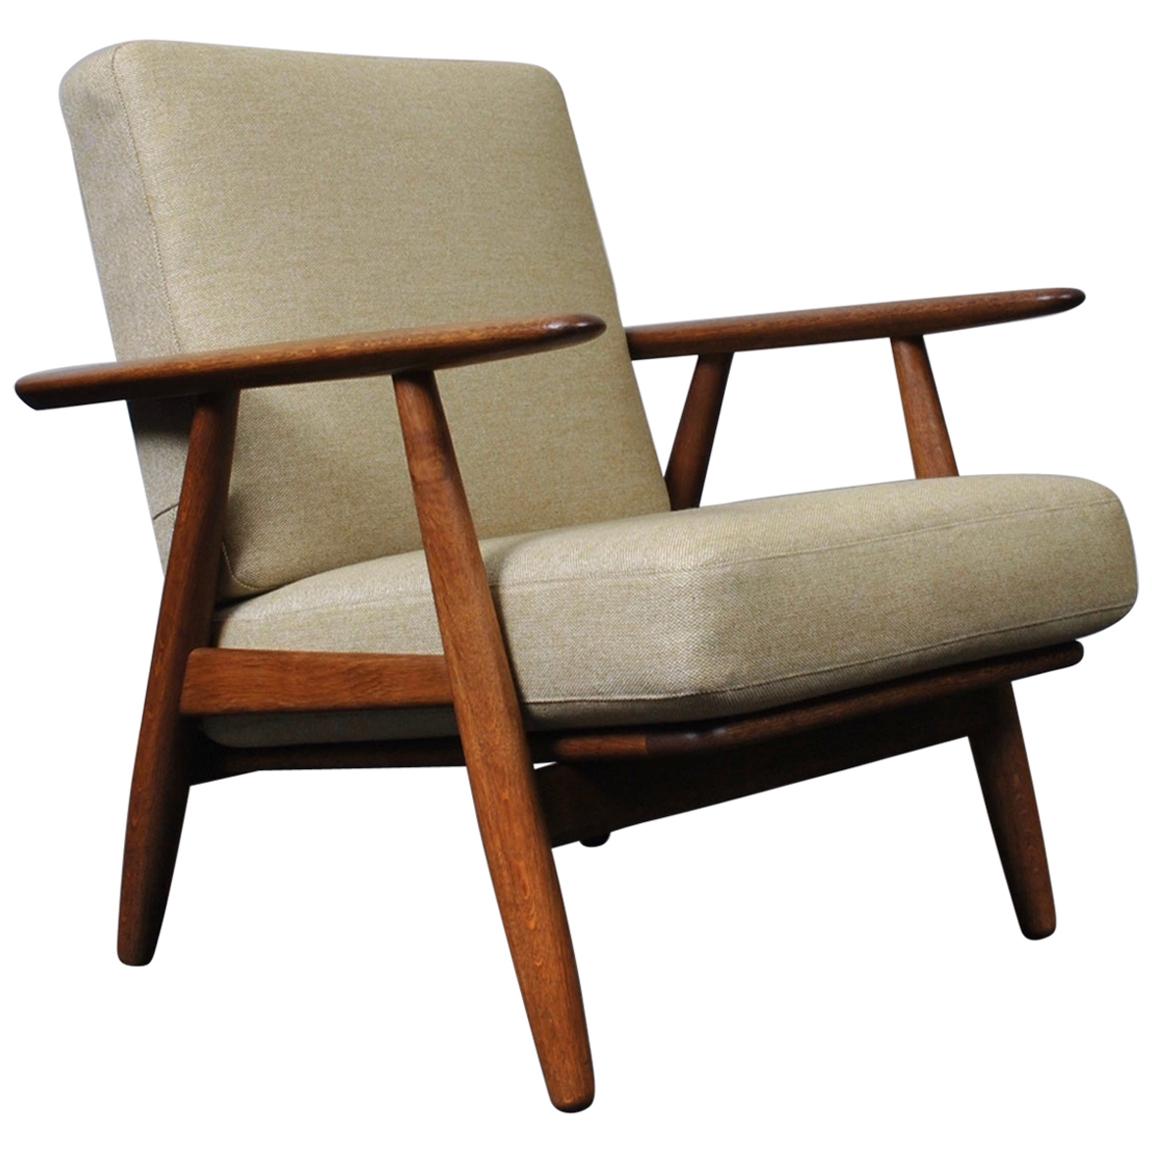 Hans J Wegner, Original GE240 Lounge Chair, Fumed Oak, New Upholstery 